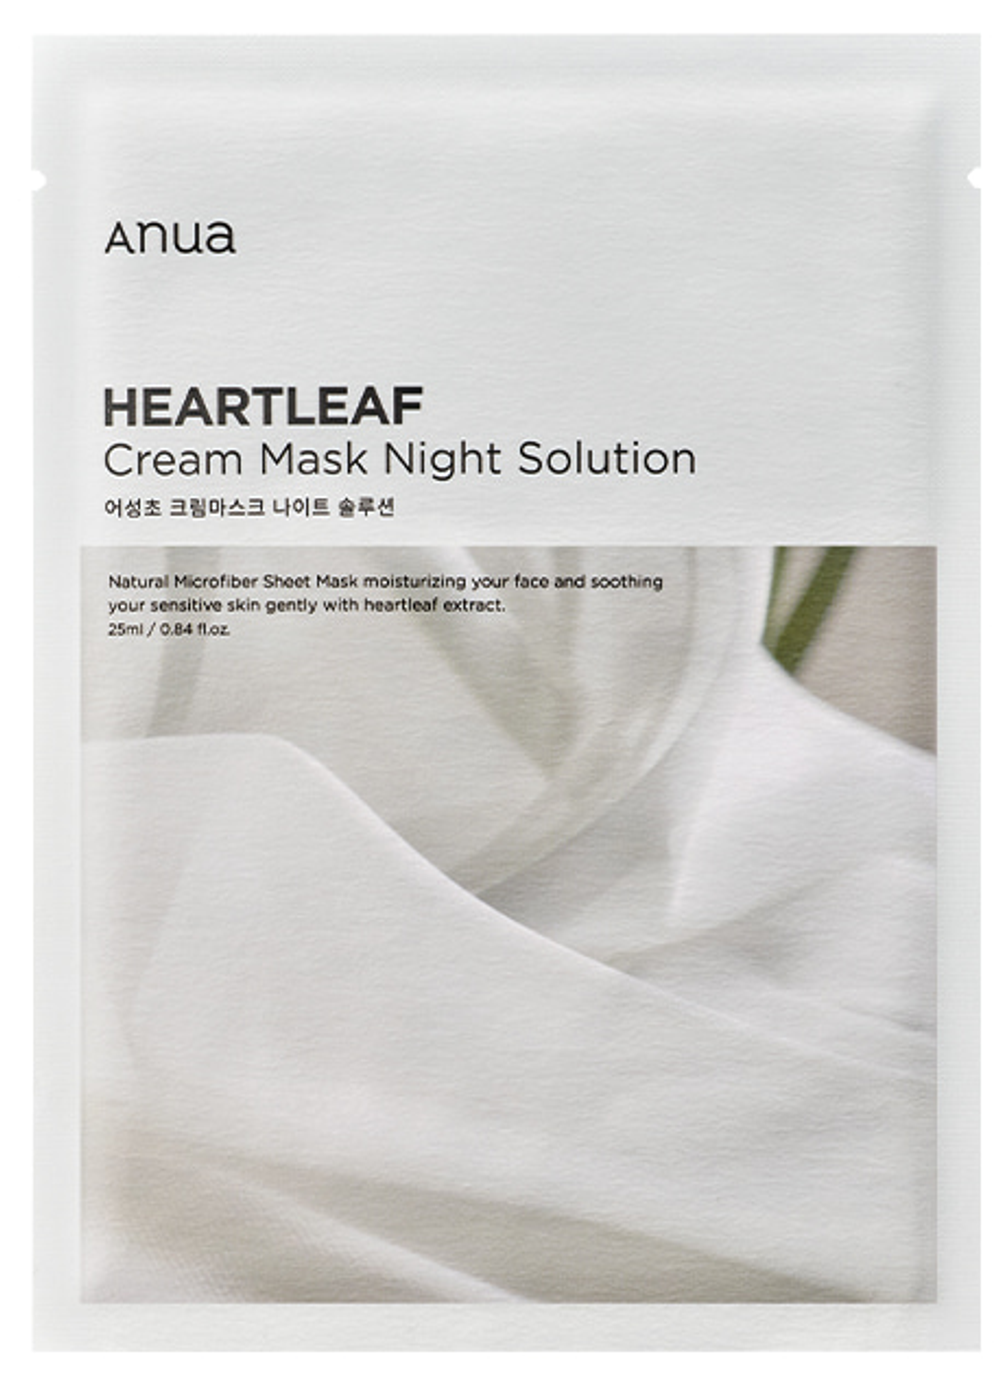 Anua Heartleaf Cream Mask Night Solution маска для лица